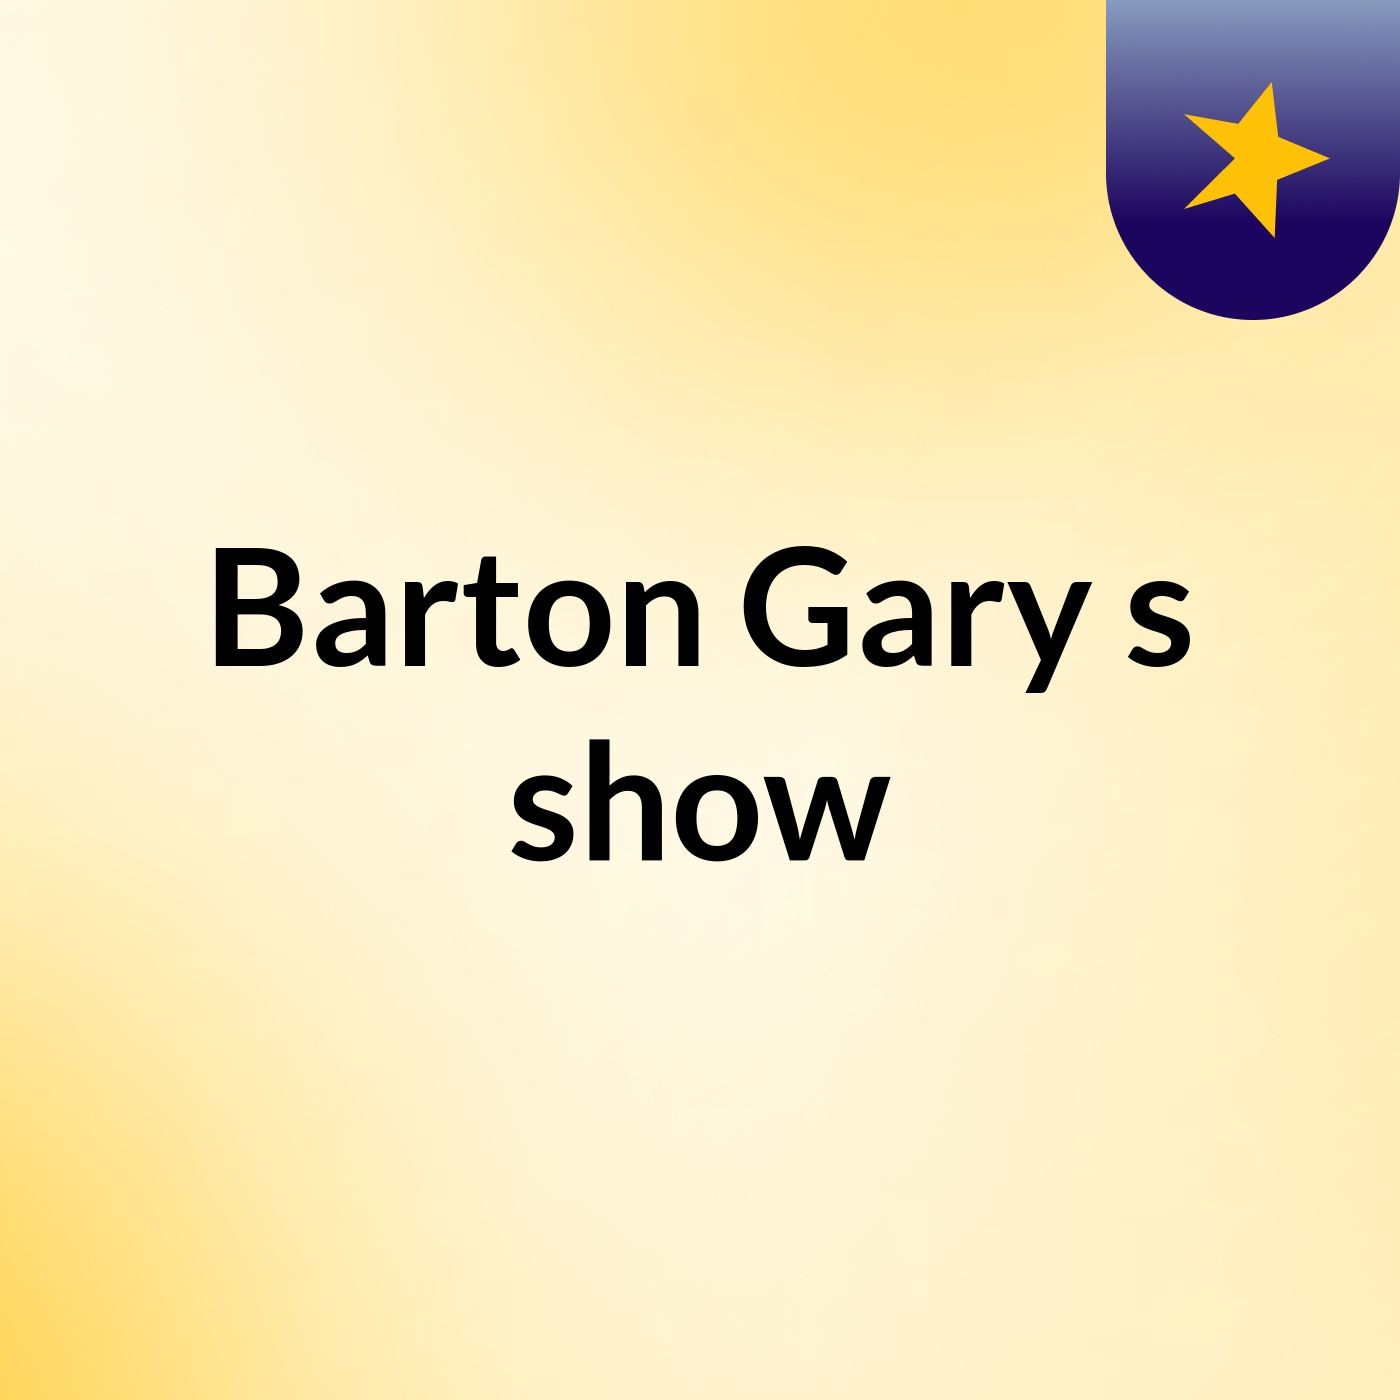 Episode 5 - Barton Gary's show